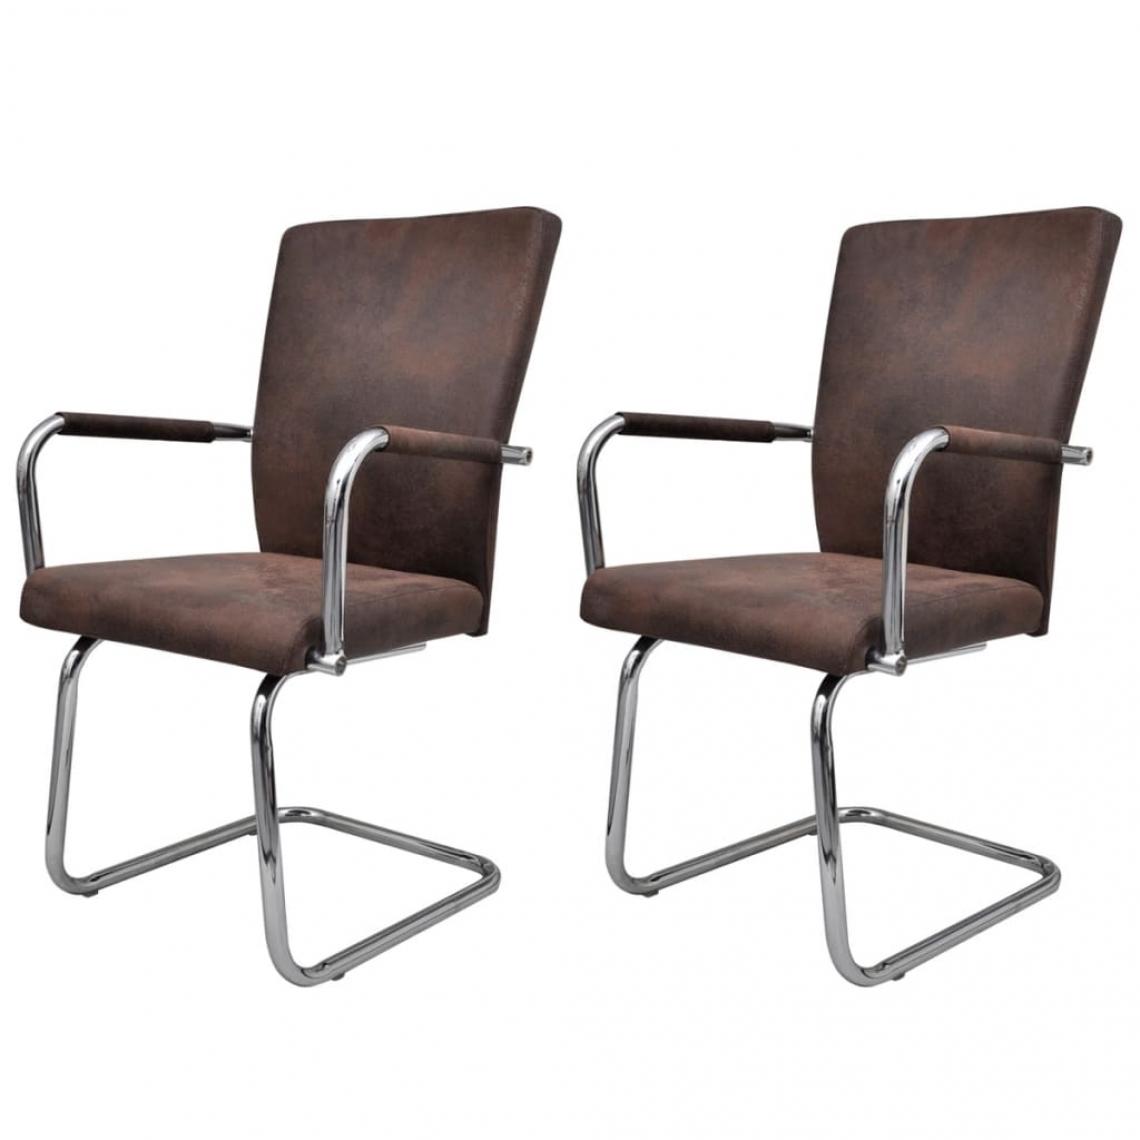 Decoshop26 - Lot de 2 chaises de salle à manger cuisine cantilever design moderne tissu cuir marron CDS020368 - Chaises